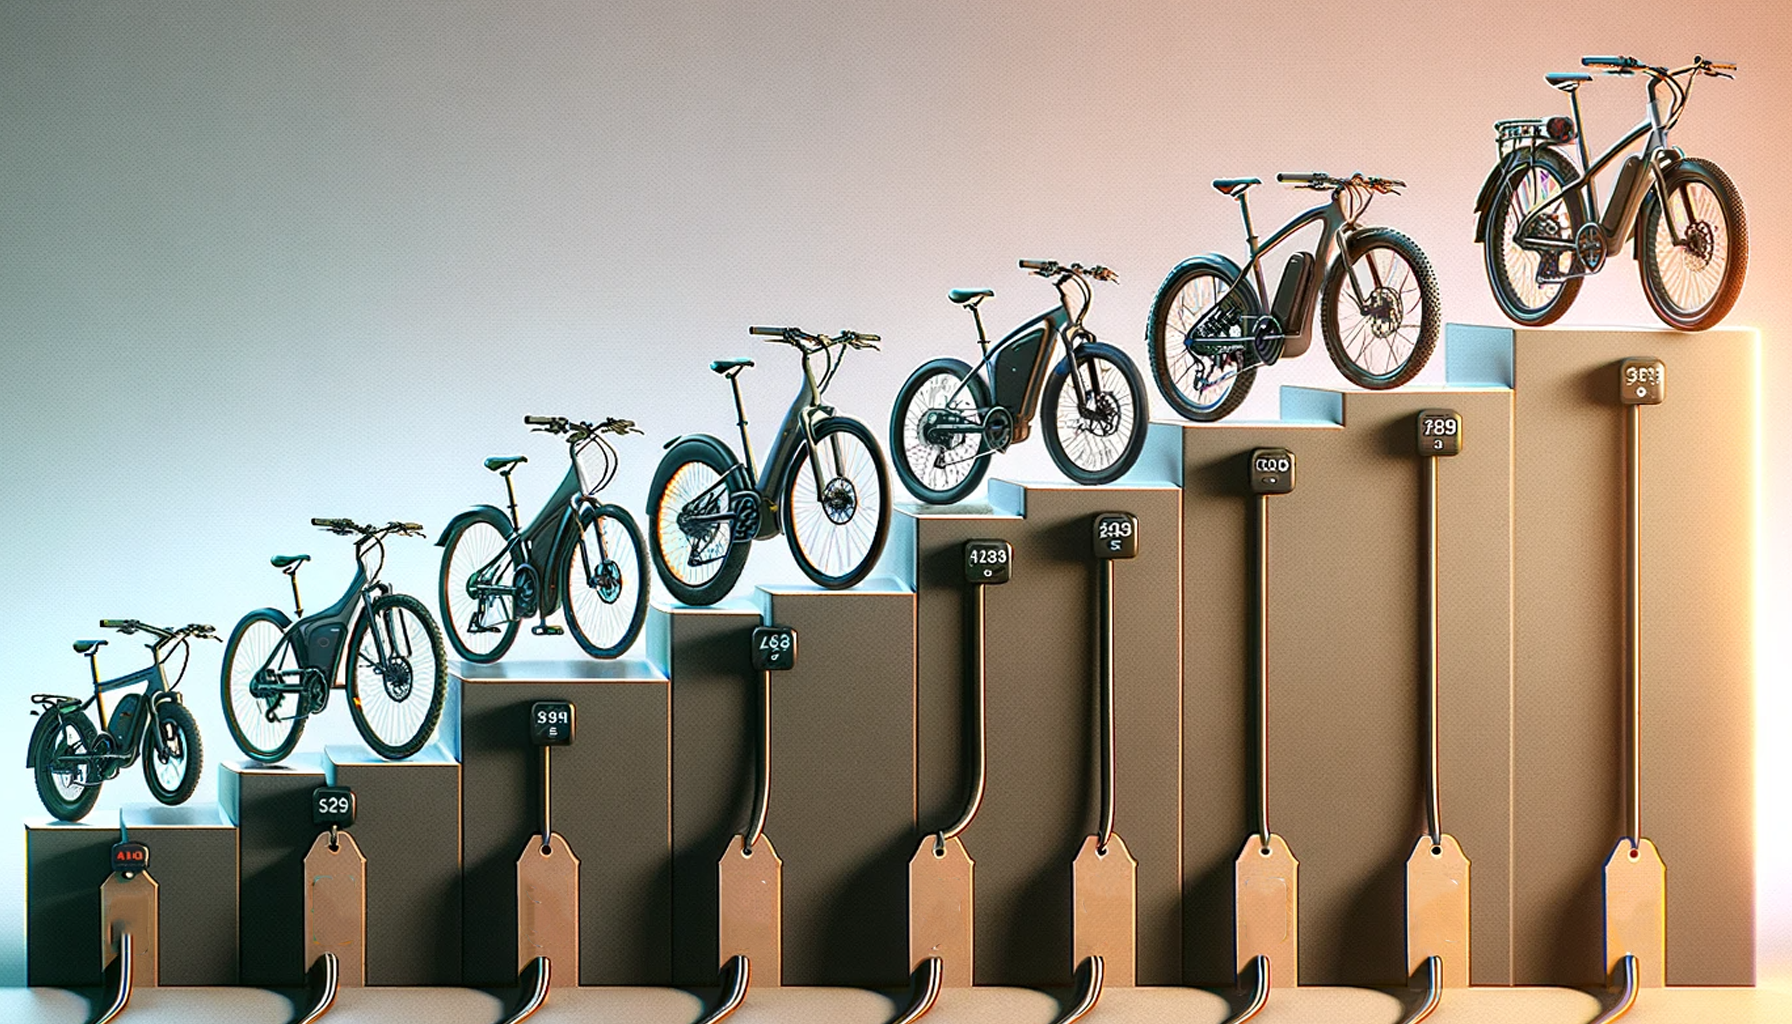 Une rangée de vélos importés de Chine, notamment électriques, exposés dans un escalier.